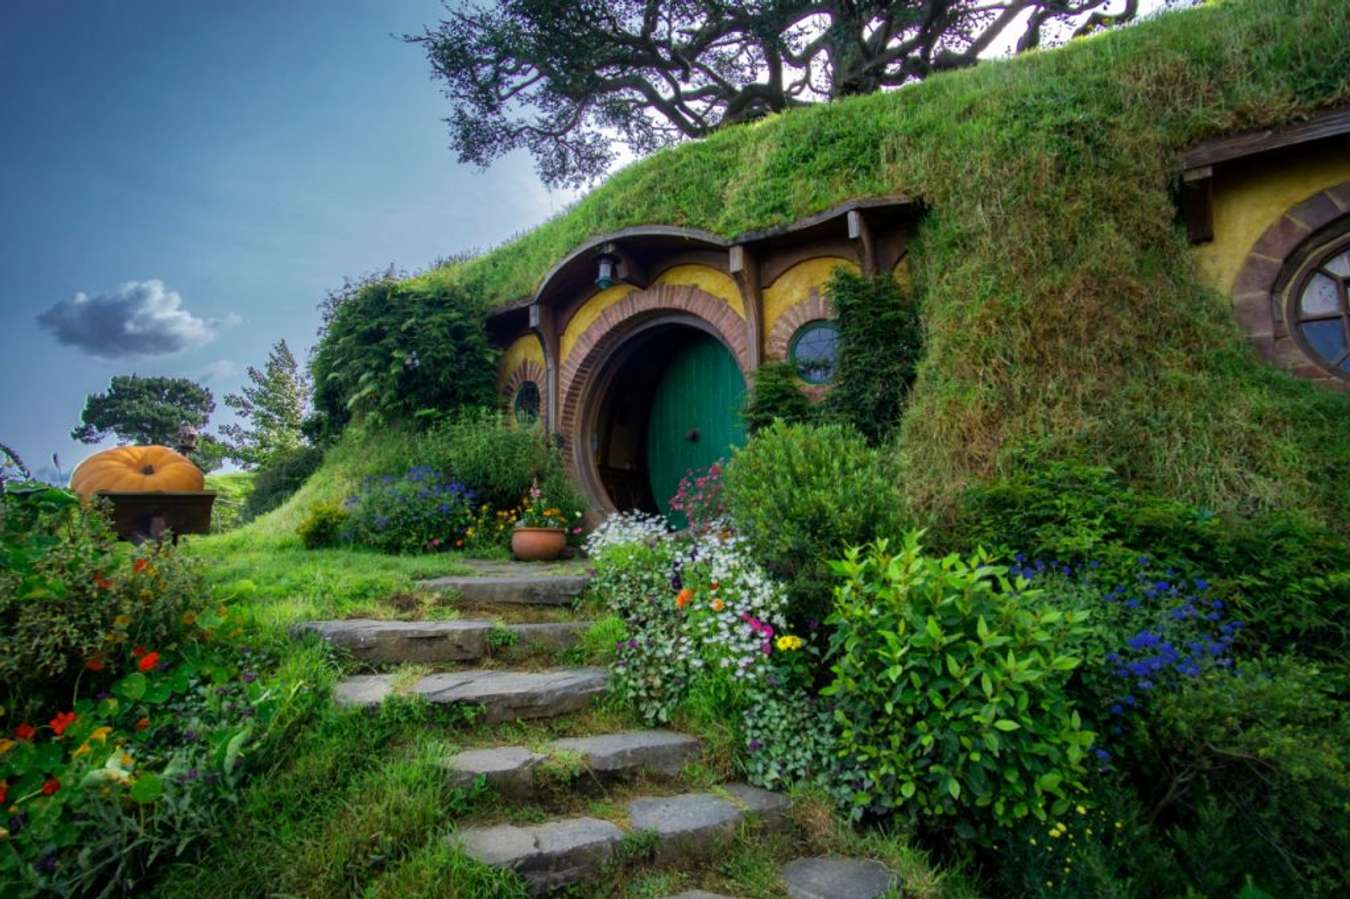 Wisata lokasi Syuting film terkenal - Rumah Hobbit di Waikato